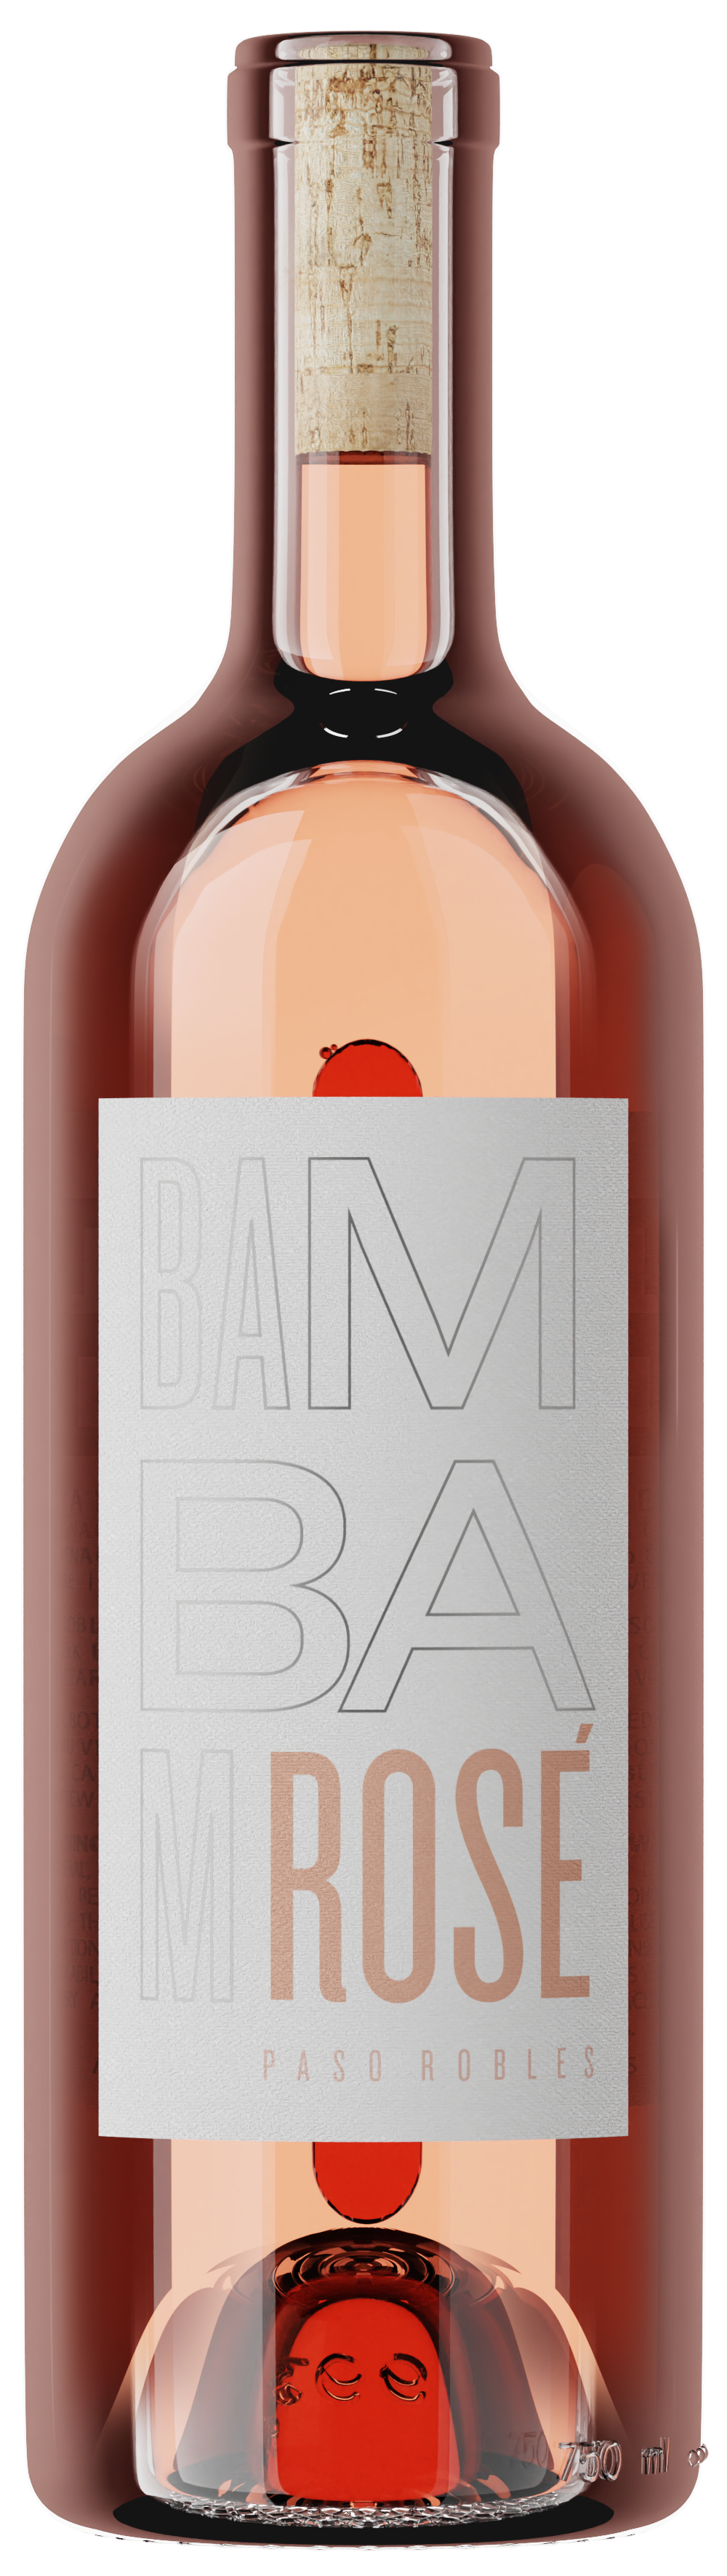 photo of bottle of 2021 Bam Bam Rosé